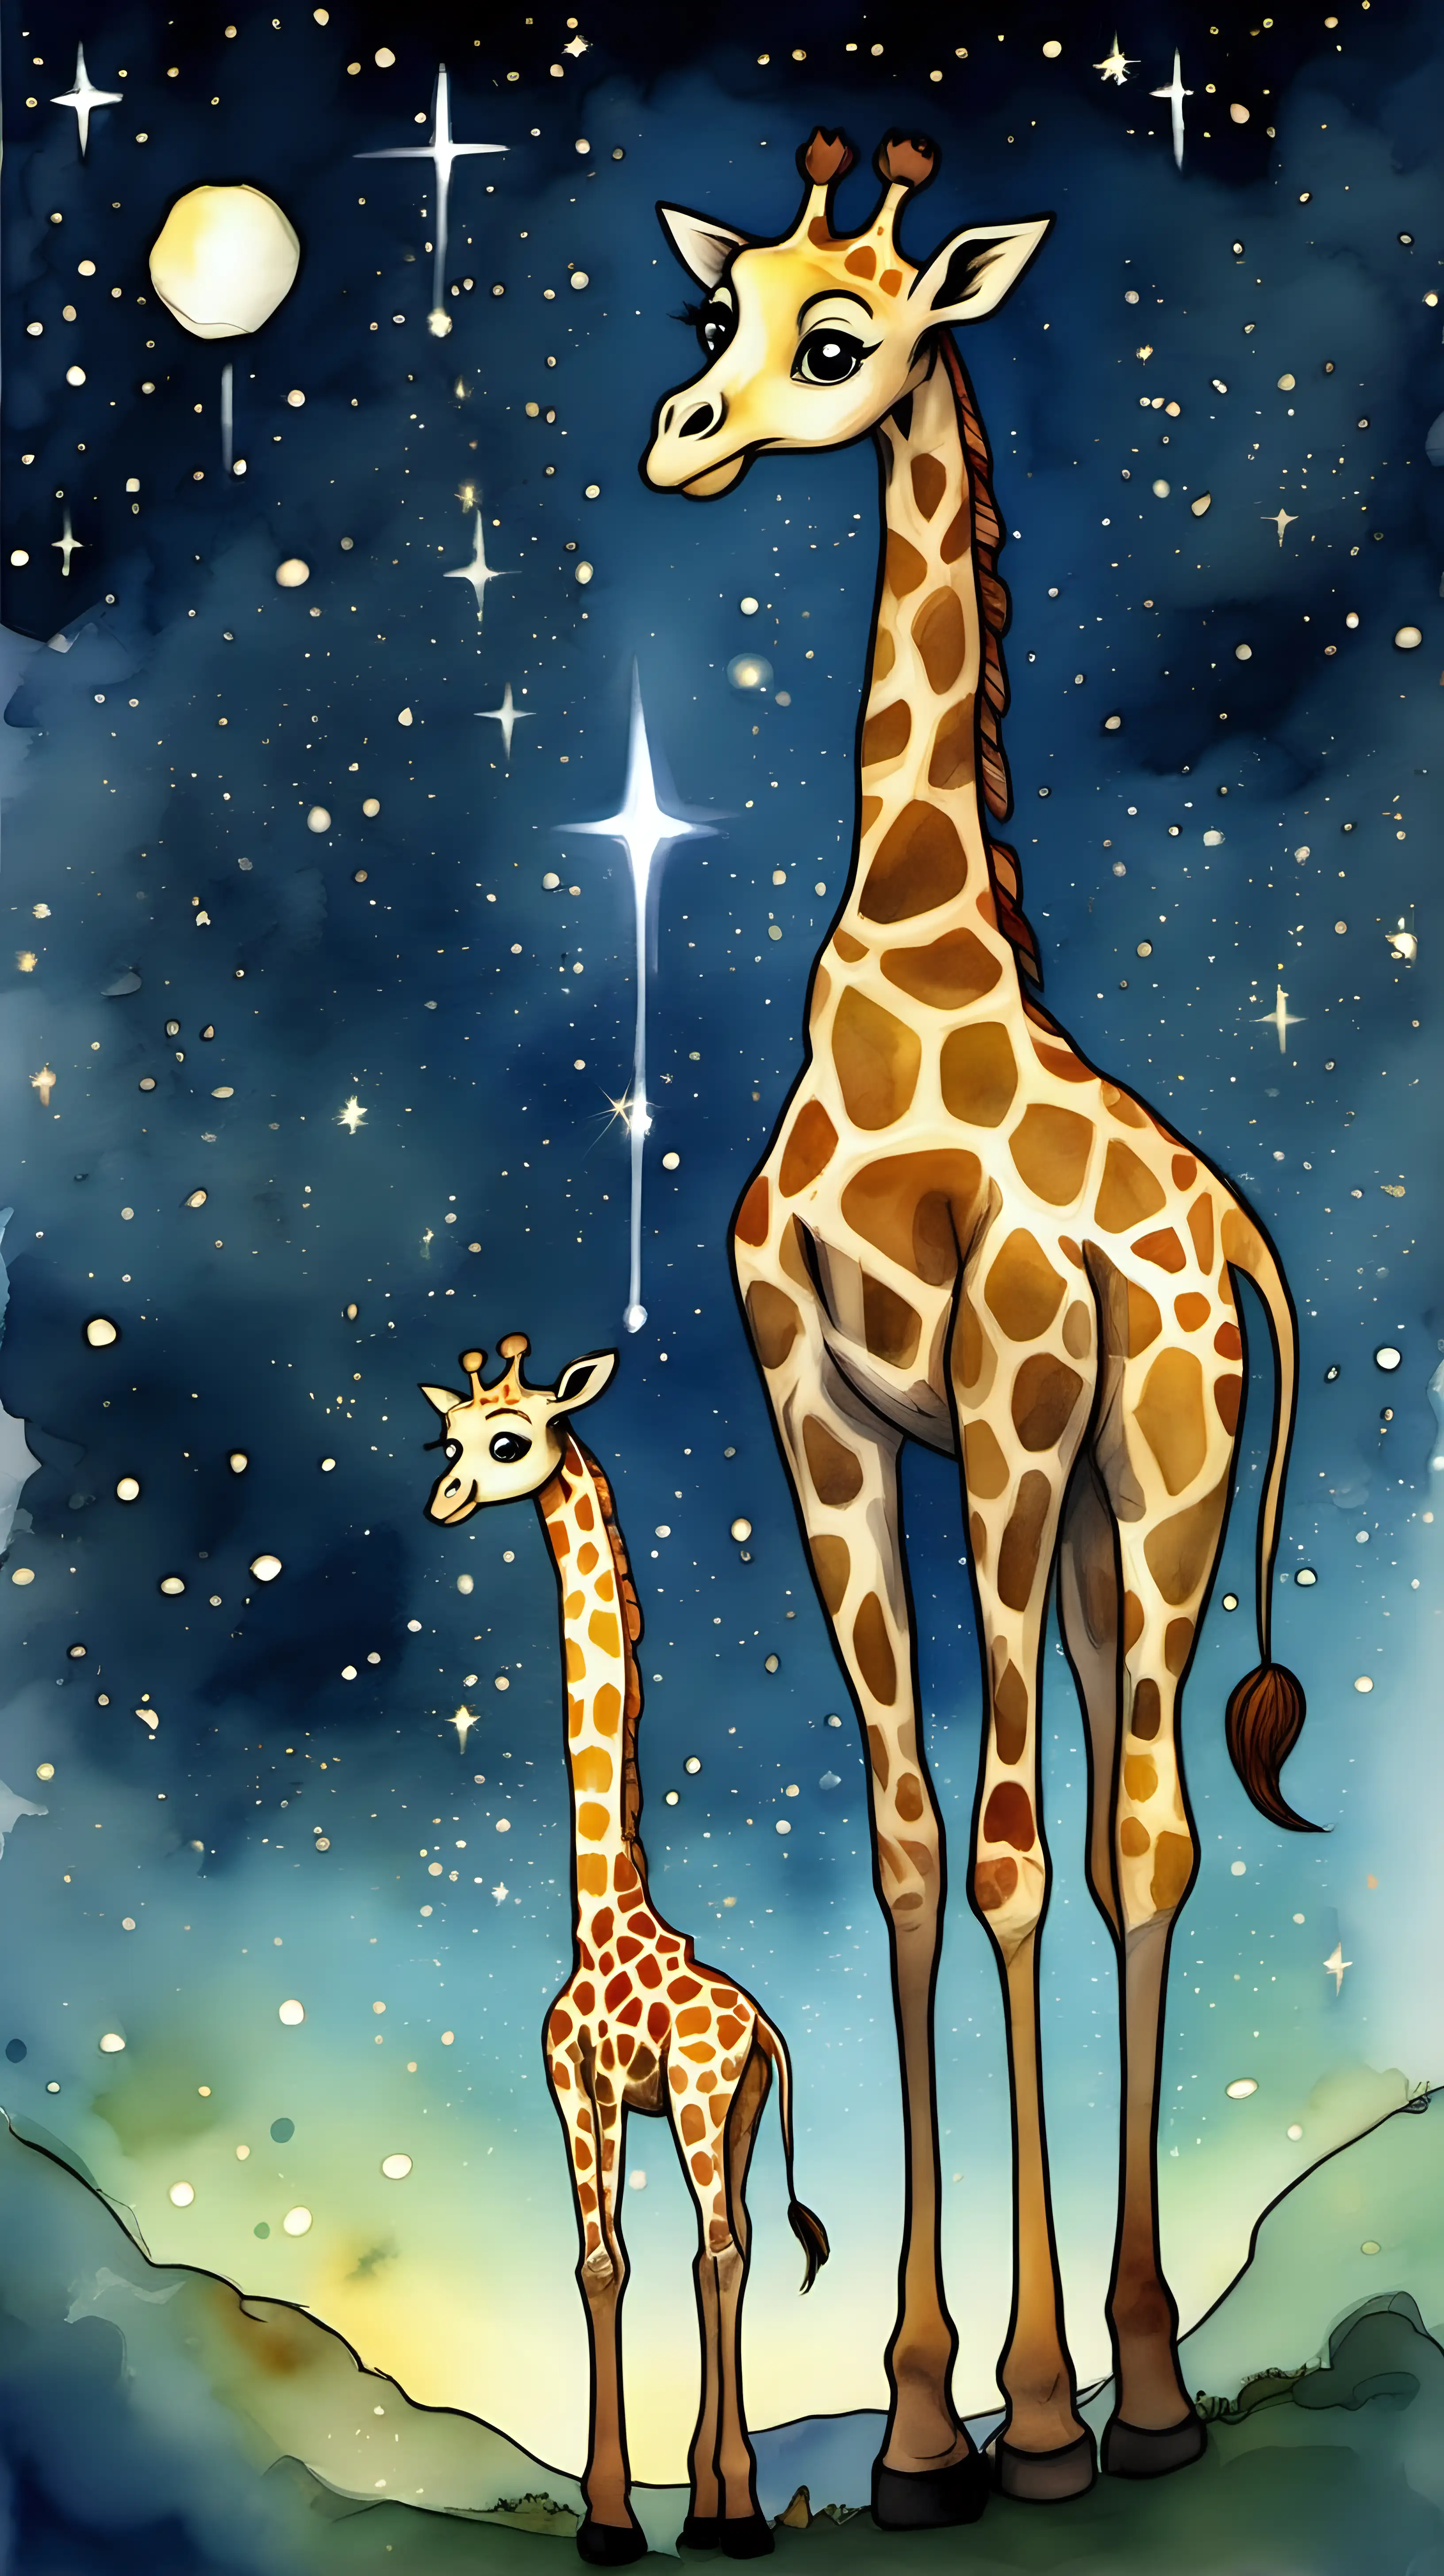 Giraffe Stella Guides a Lost Star in Watercolor Night Sky Scene